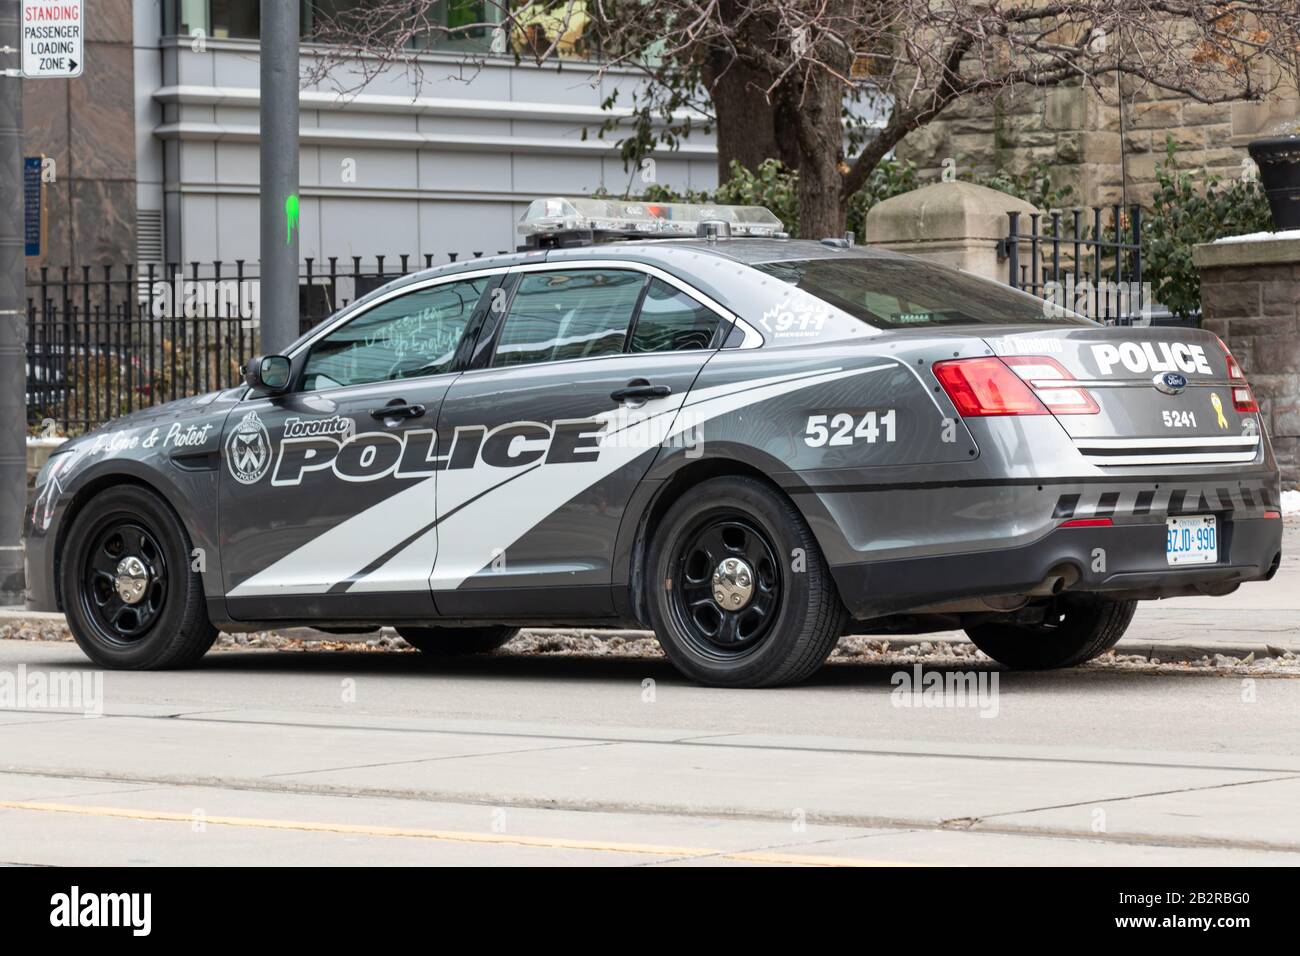 Tagsüber parkte das graue Polizeiauto der Toronto Police an einer Straße in der Stadt. Stockfoto